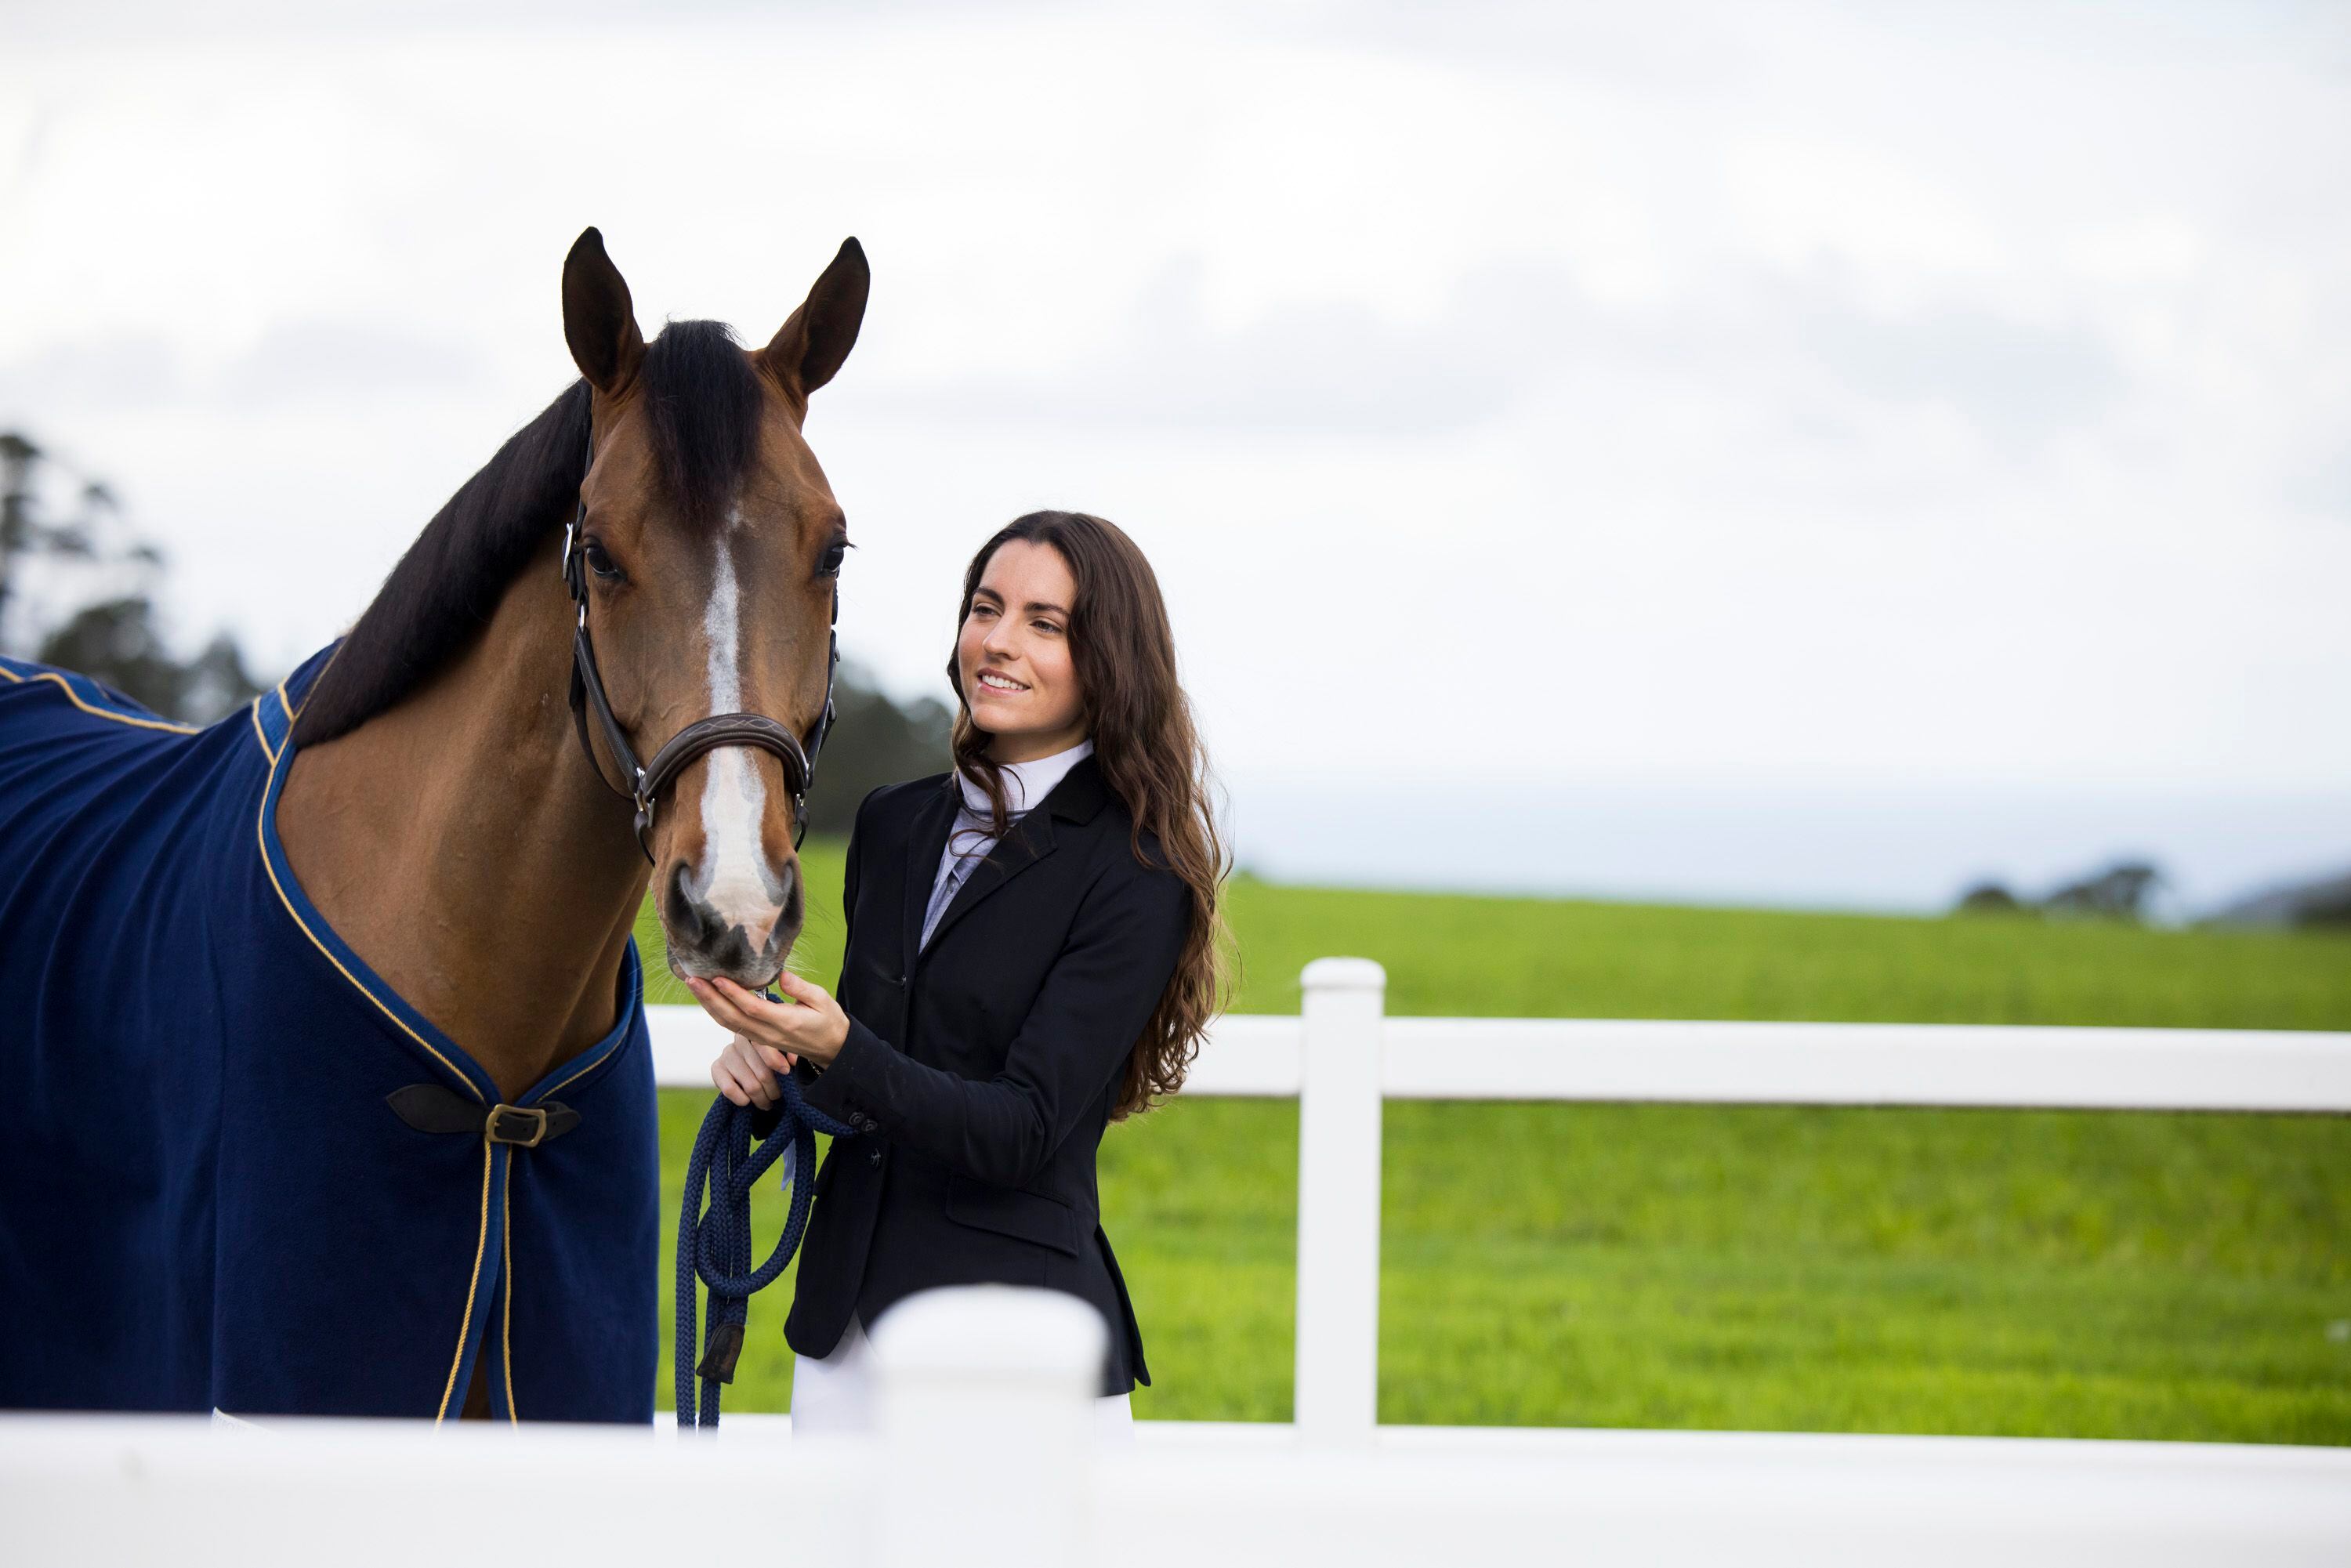 Riva valora mucho la conexión que tiene con los caballos: 